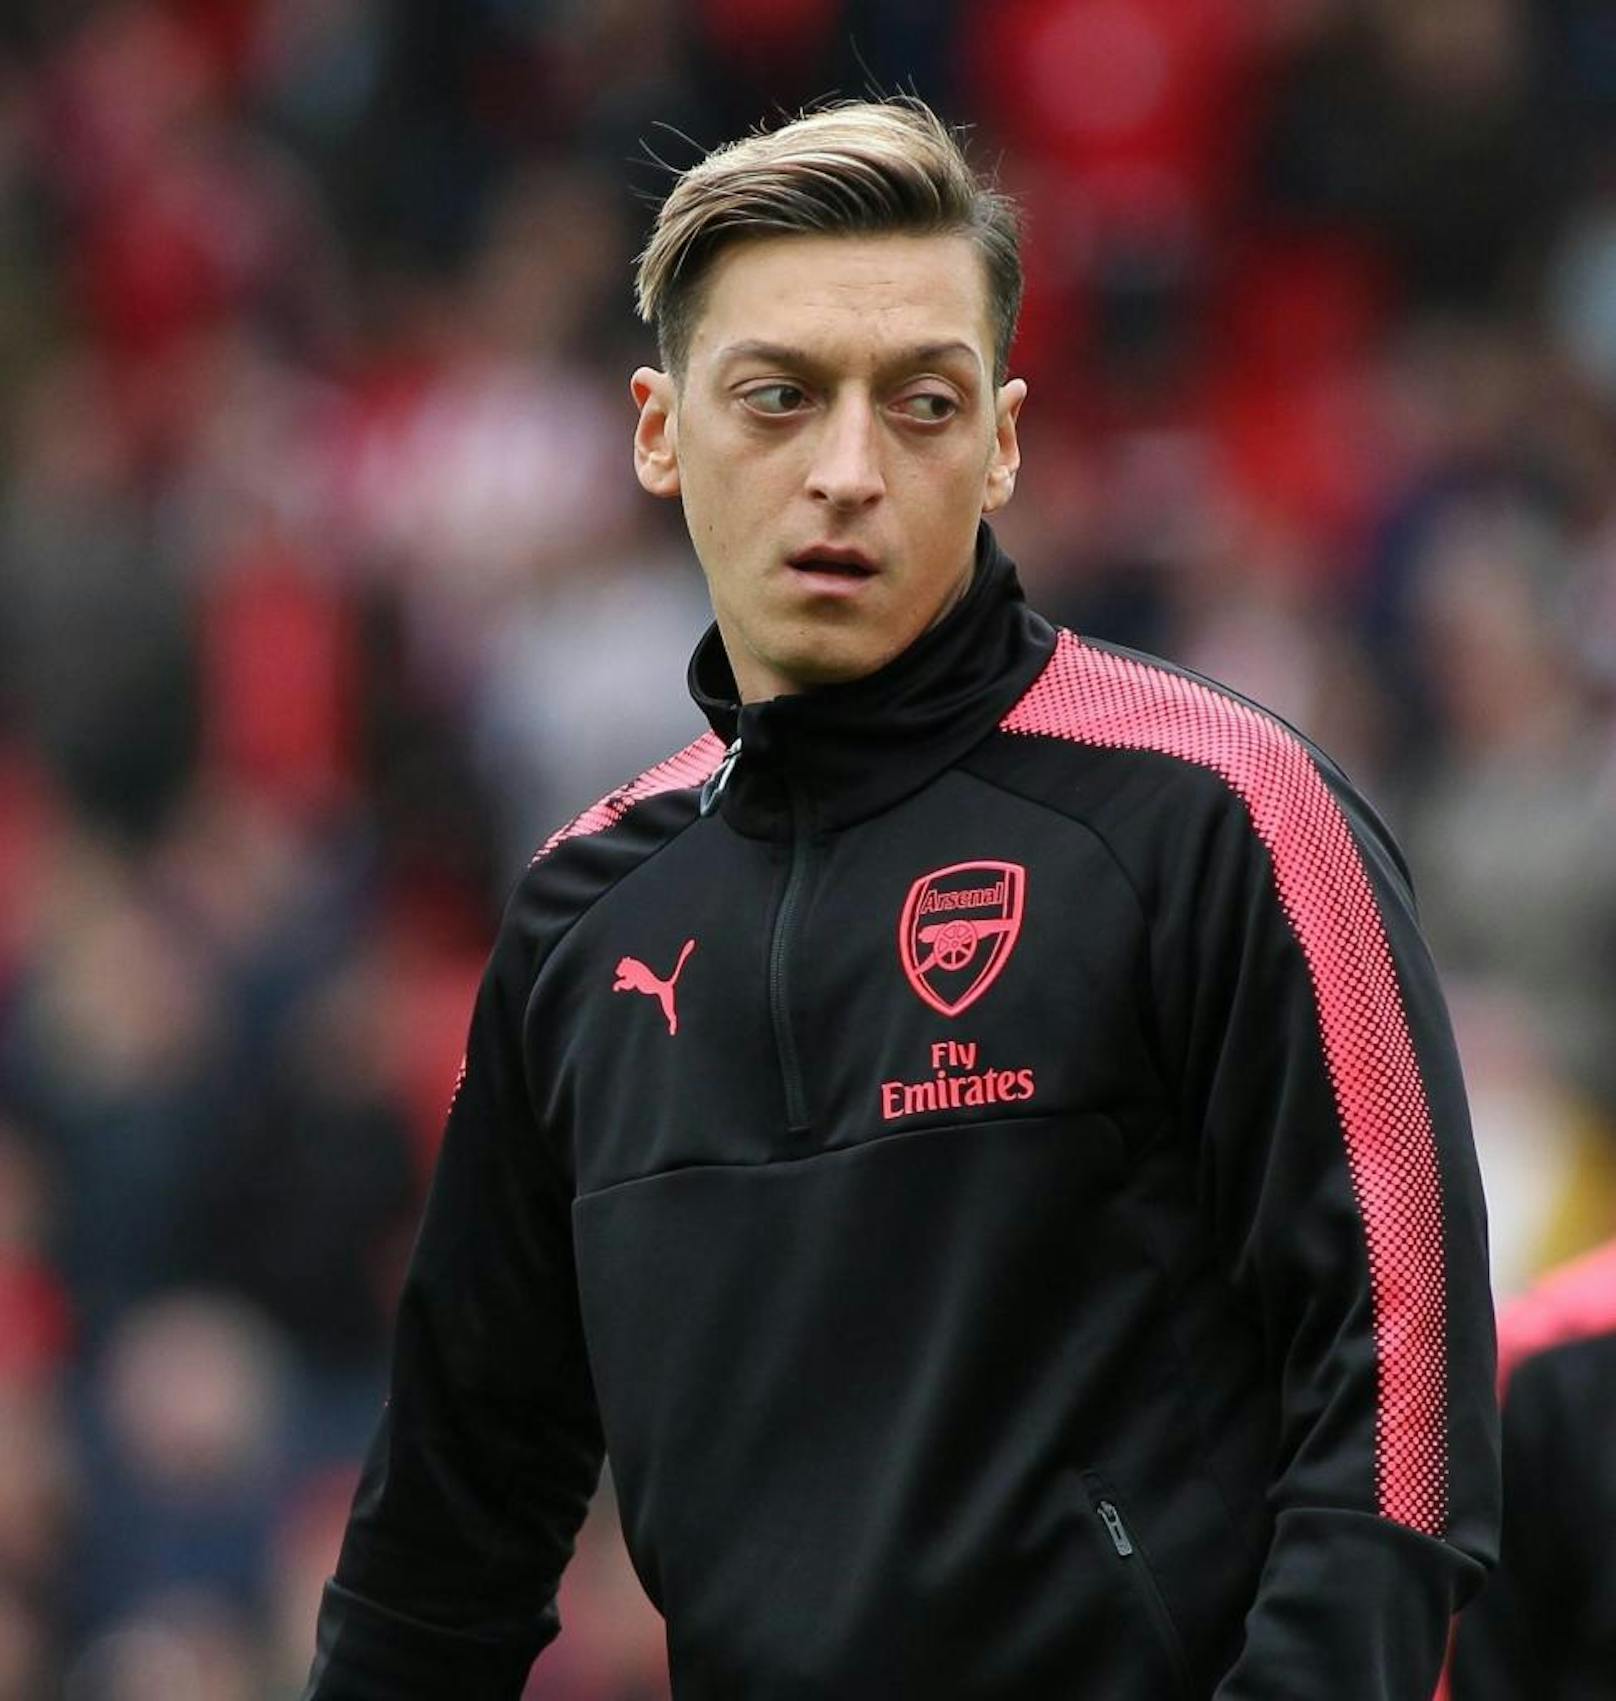 Mesut Özil (29)
Position: Mittelfeld
Verein: FC Arsenal
Marktwert: 50,00 Mio. 